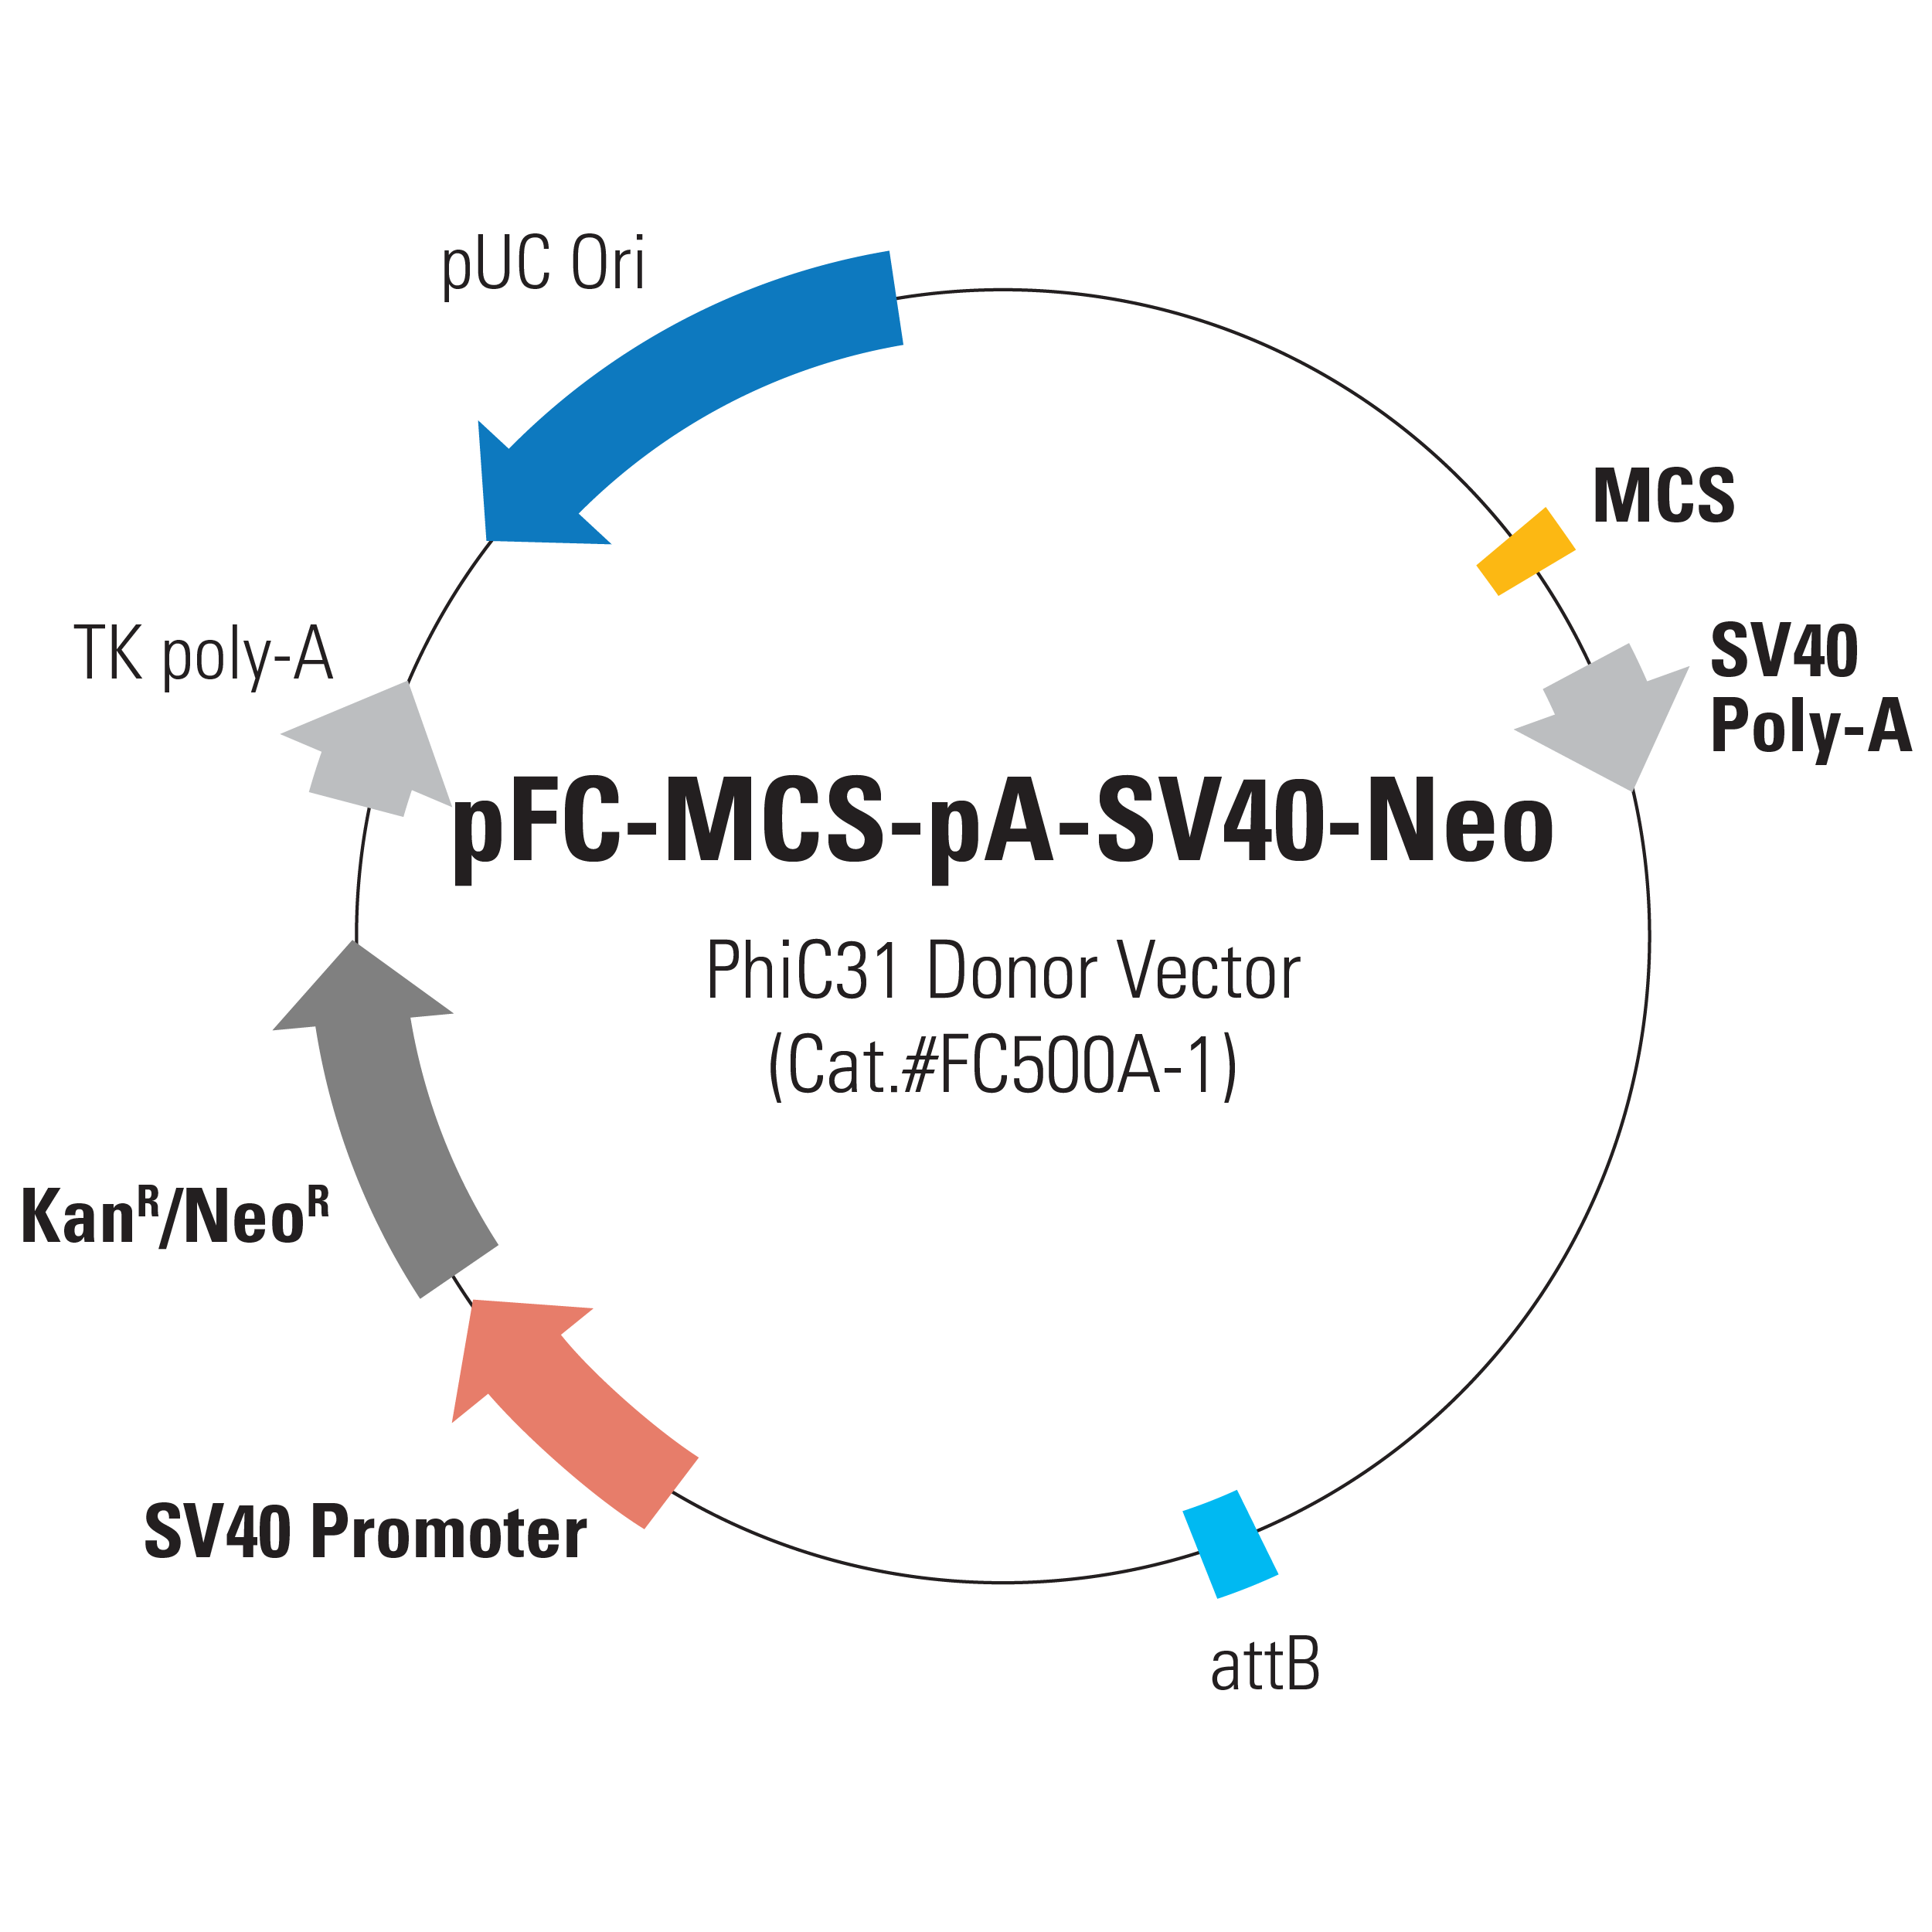 遺伝子組換えを一段階で行う遺伝子導入システム phiC31 Integrase Vector System